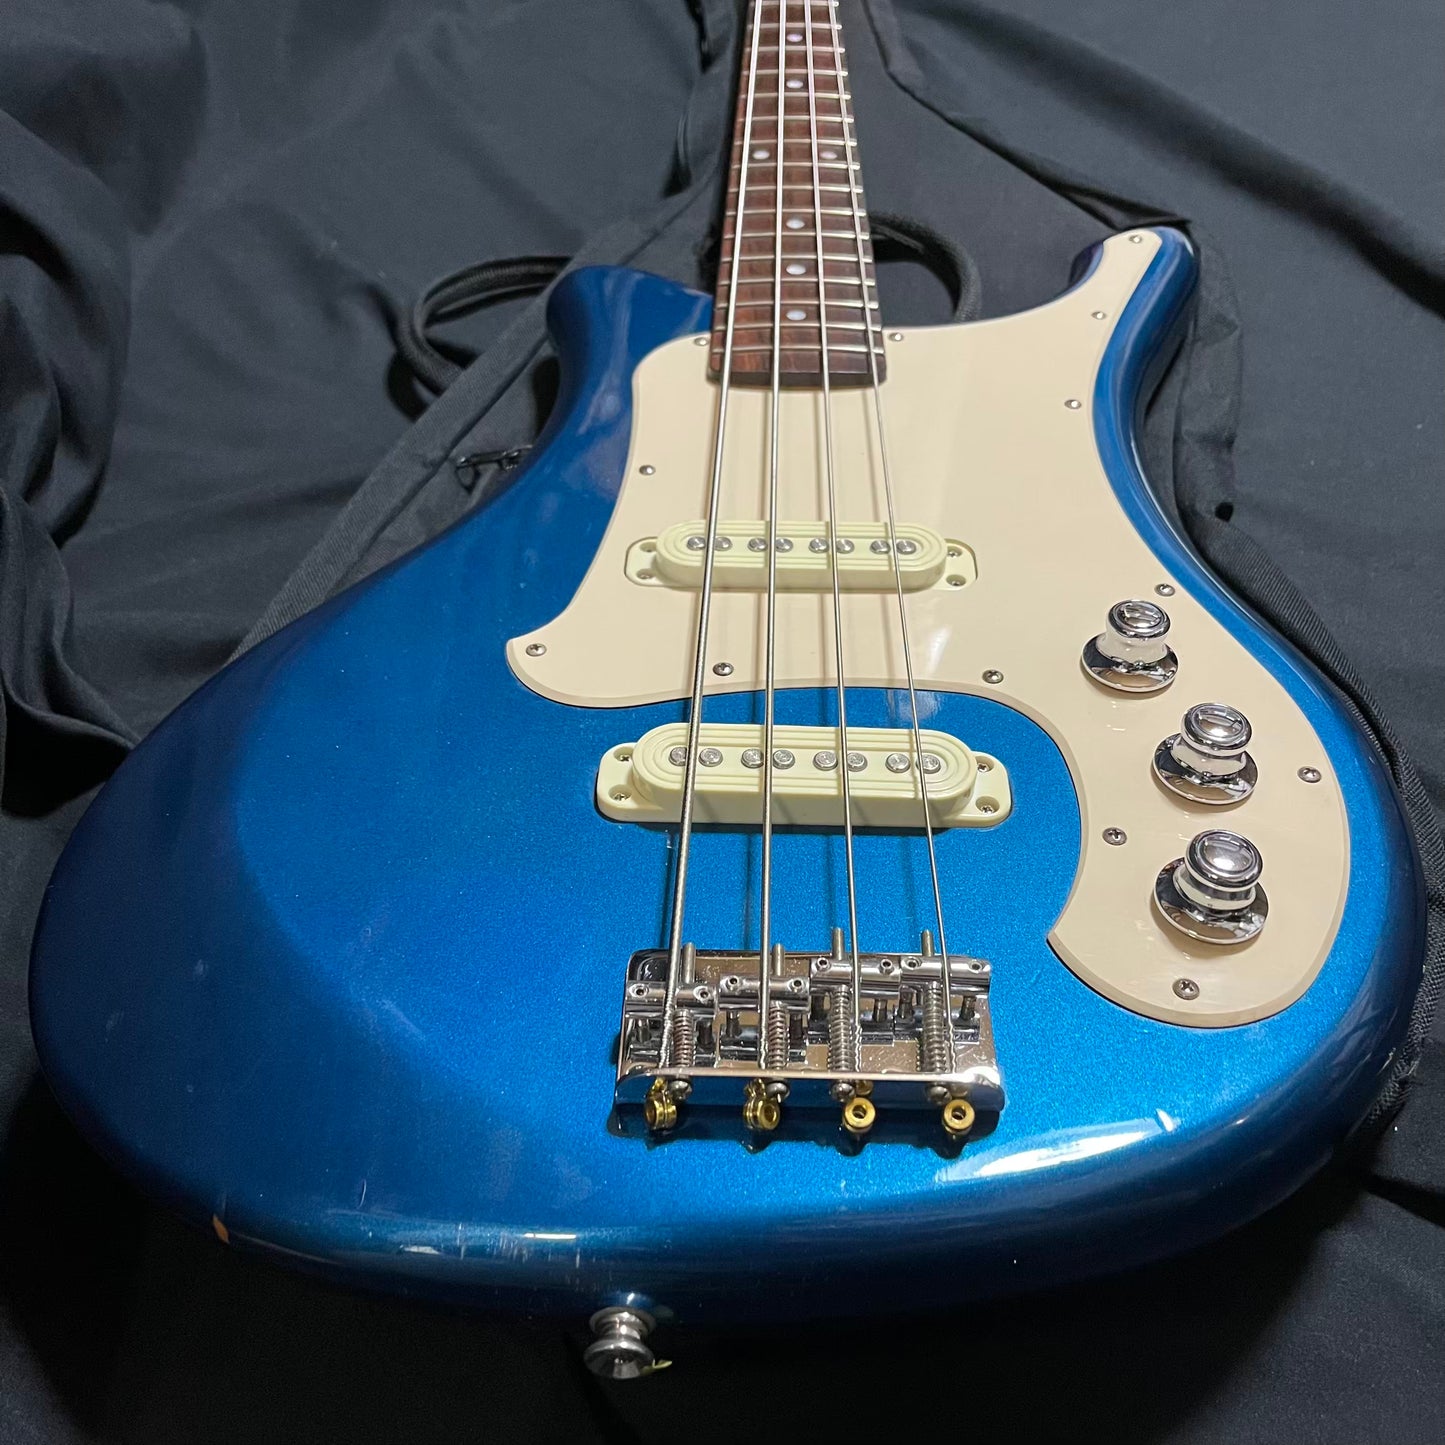 Yamaha SBV500 - Shelby Blue Flying Samurai Bass